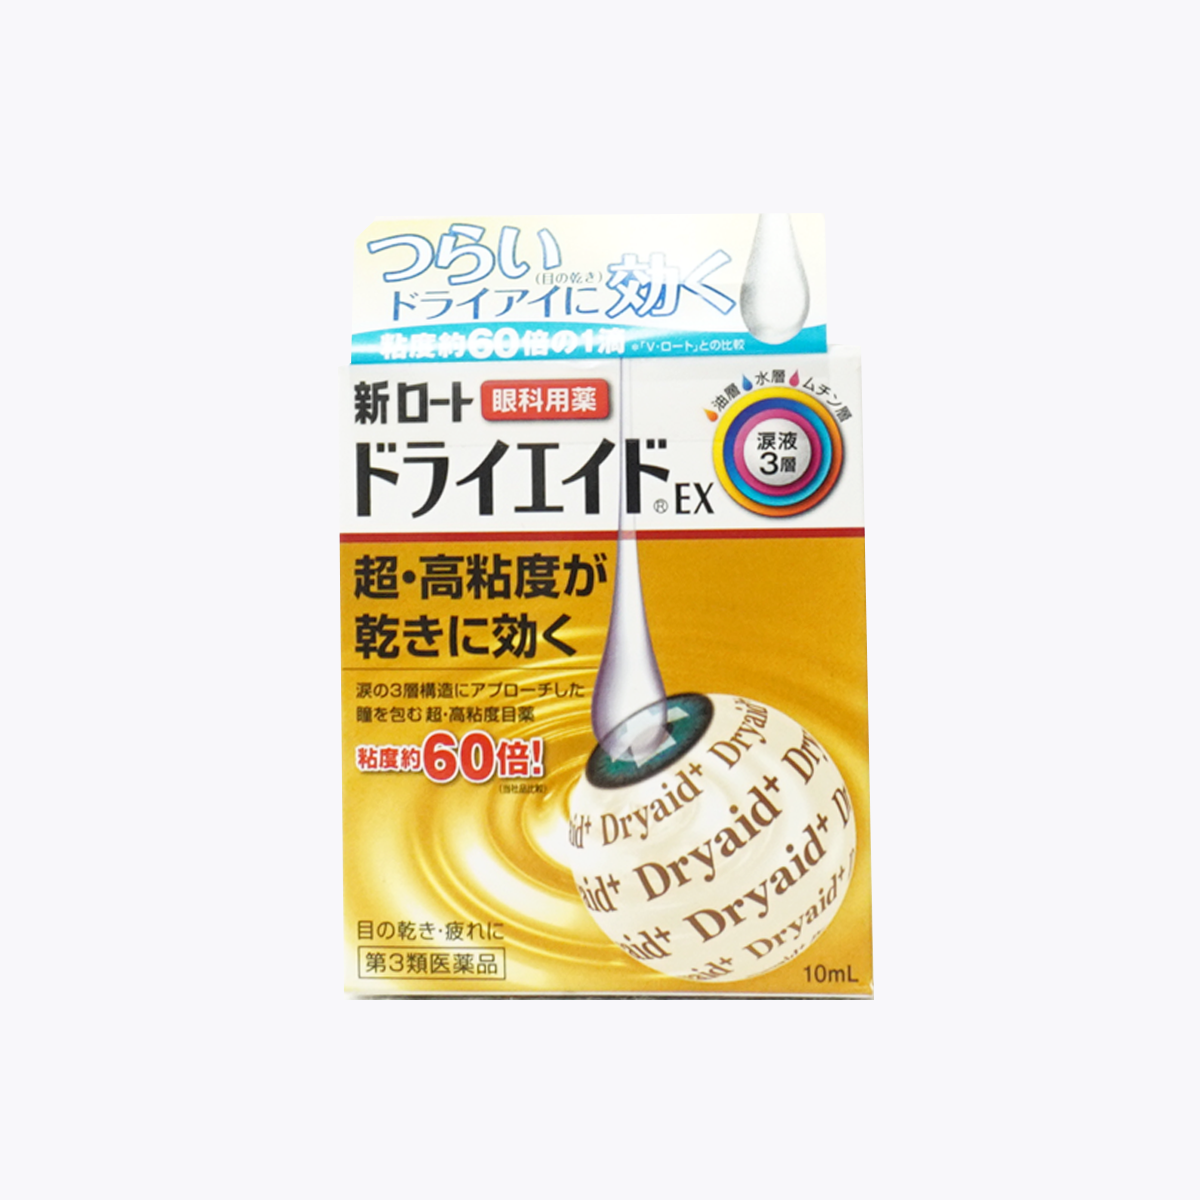 【第3類医薬品】ロート製薬 新ロート ドライエイドEX 10ml